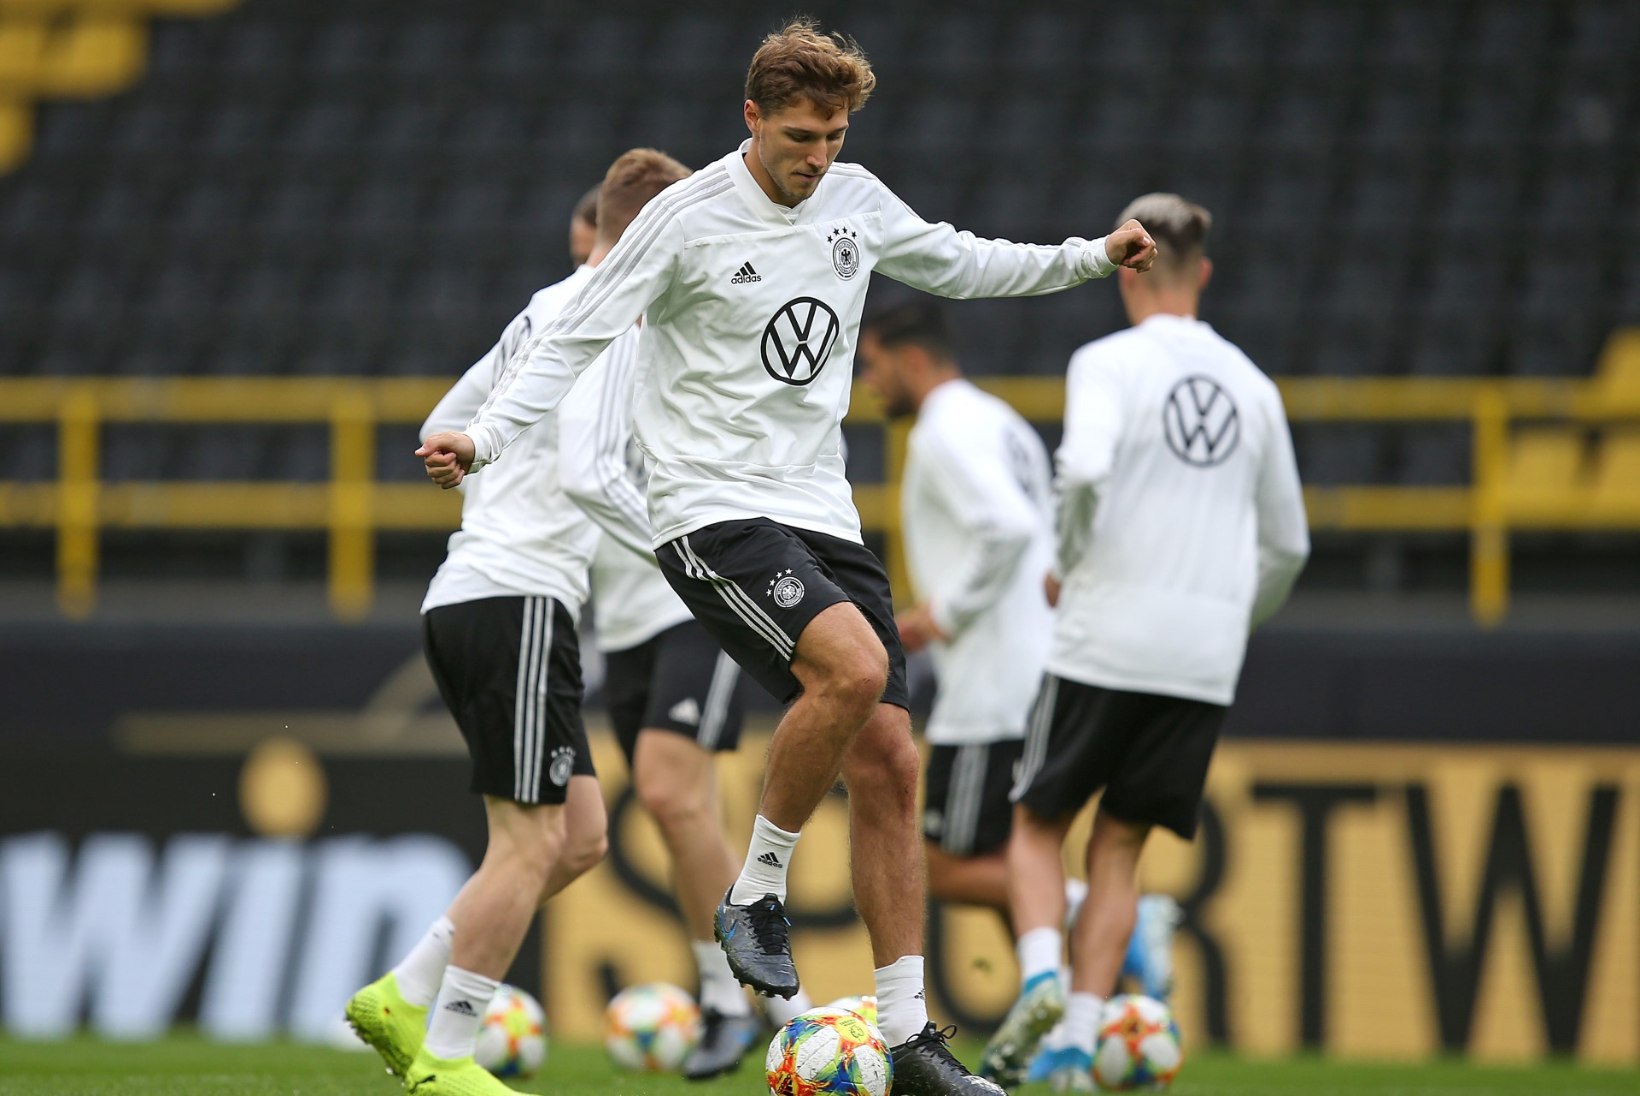 OI-OI! Saksamaa jalgpallikoondislane ei saa jabura vigastuse tõttu Eesti vastu mängida